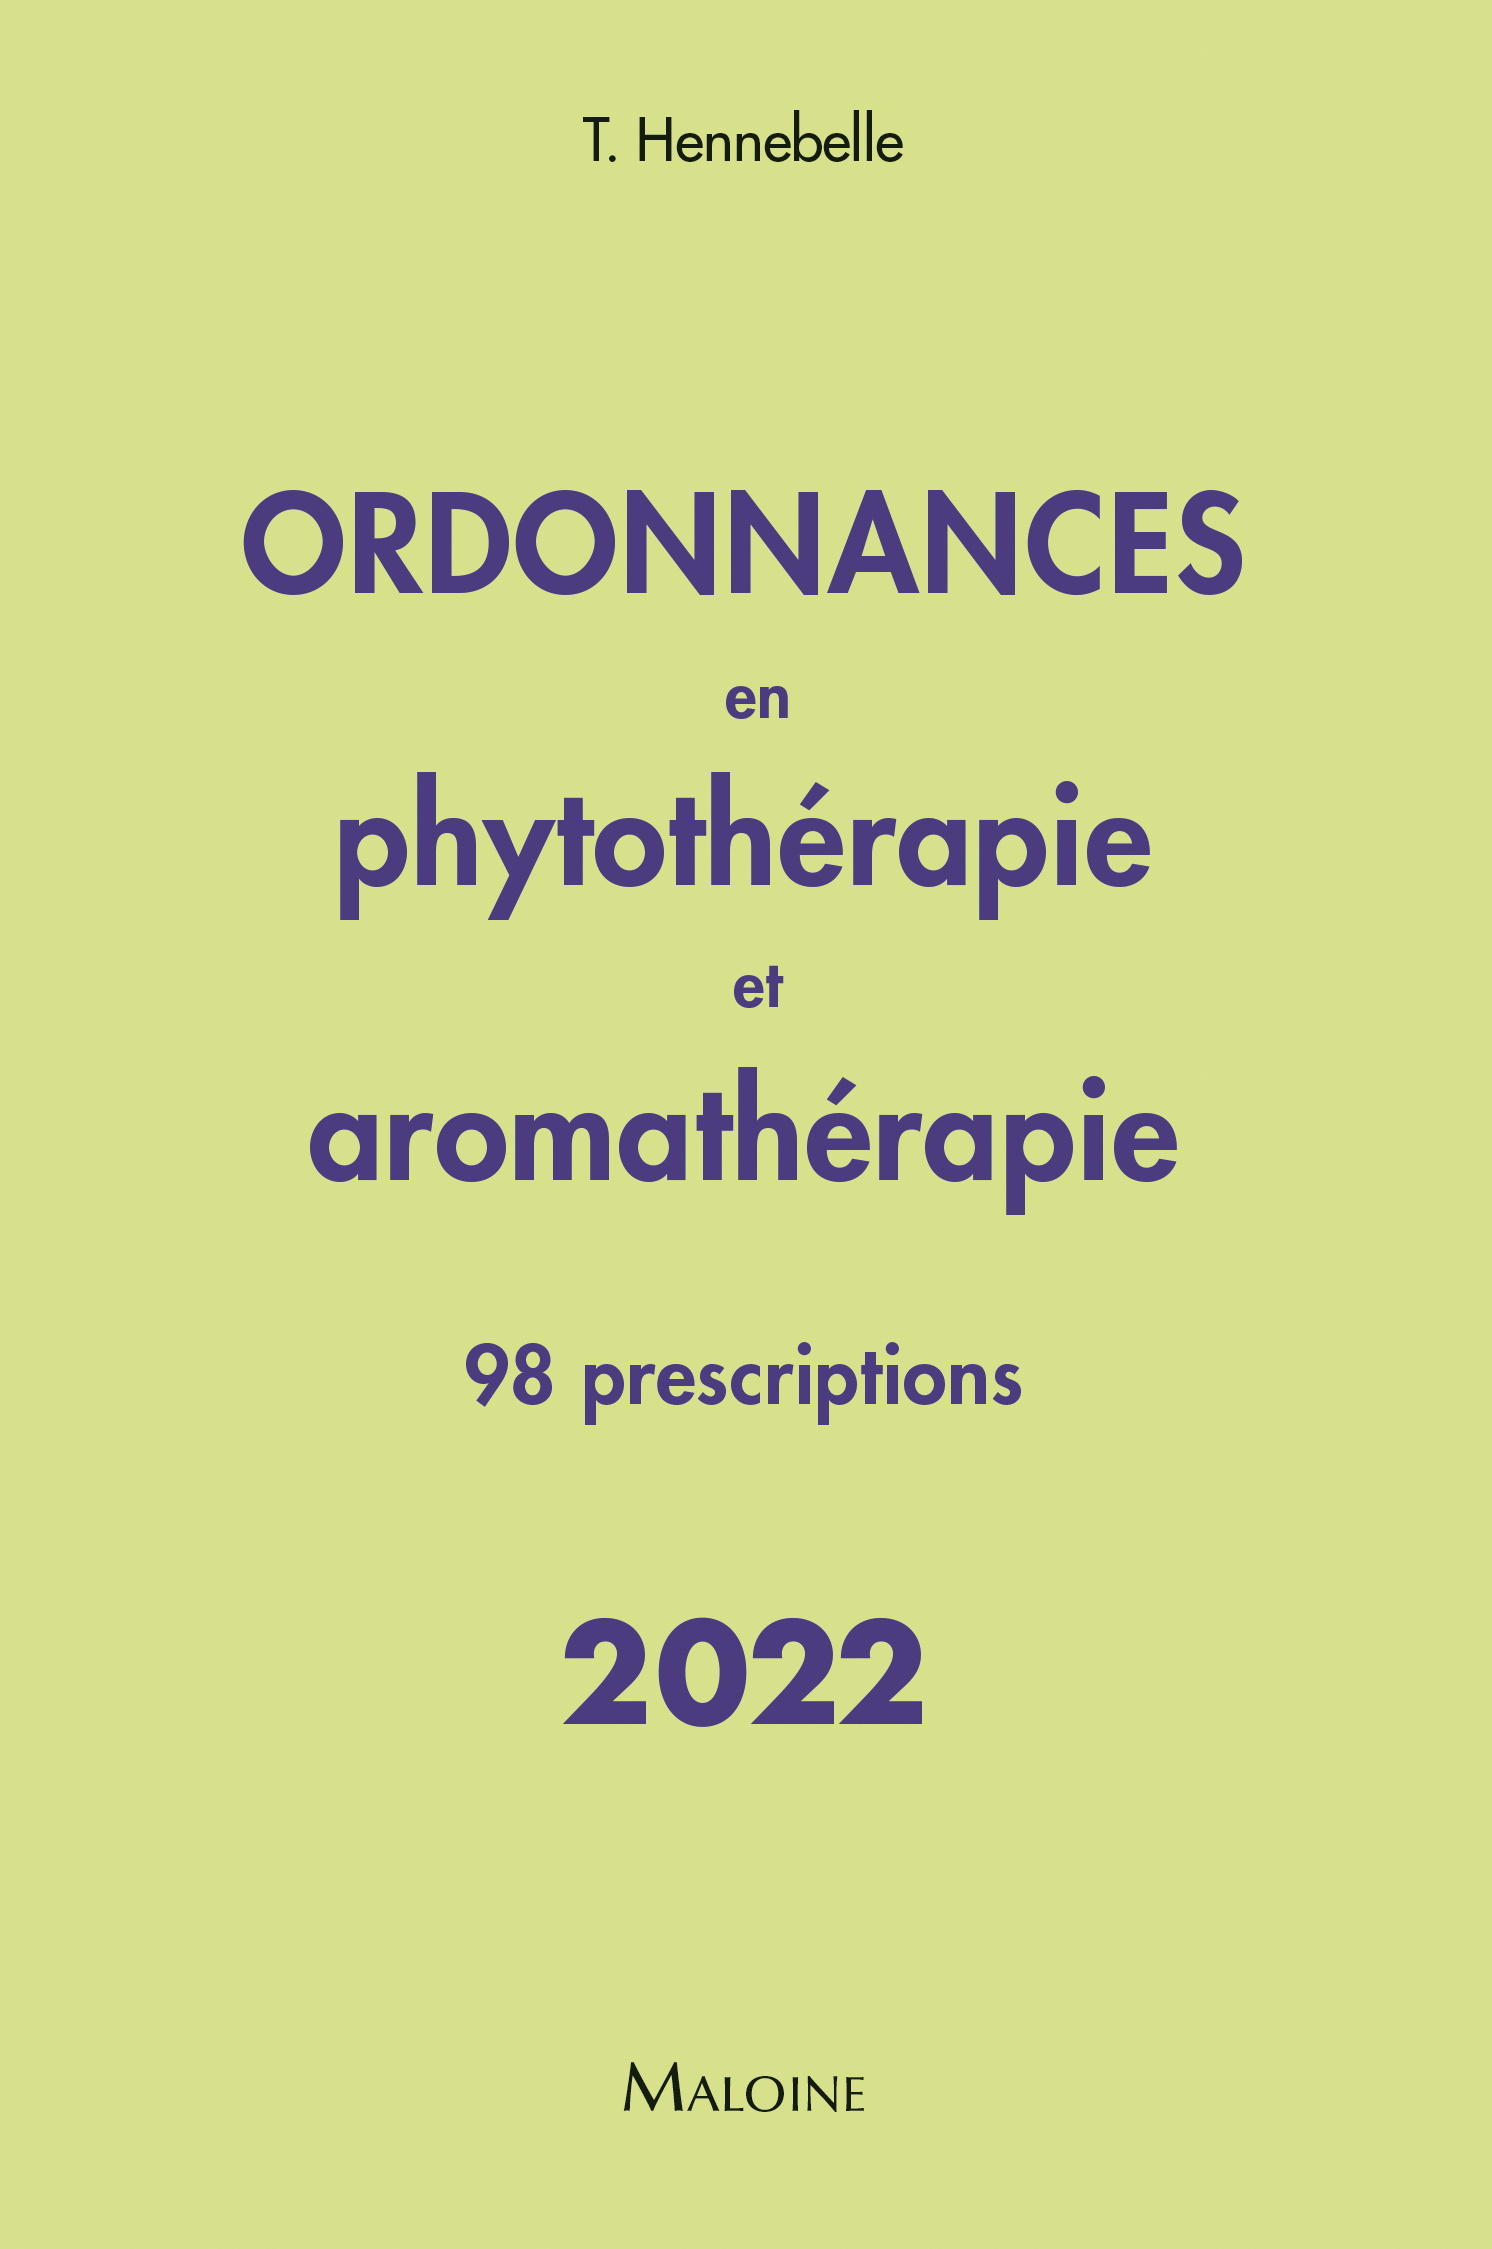 Ordonnances en phytothérapie et aromathérapie 2022 – 98 prescriptions